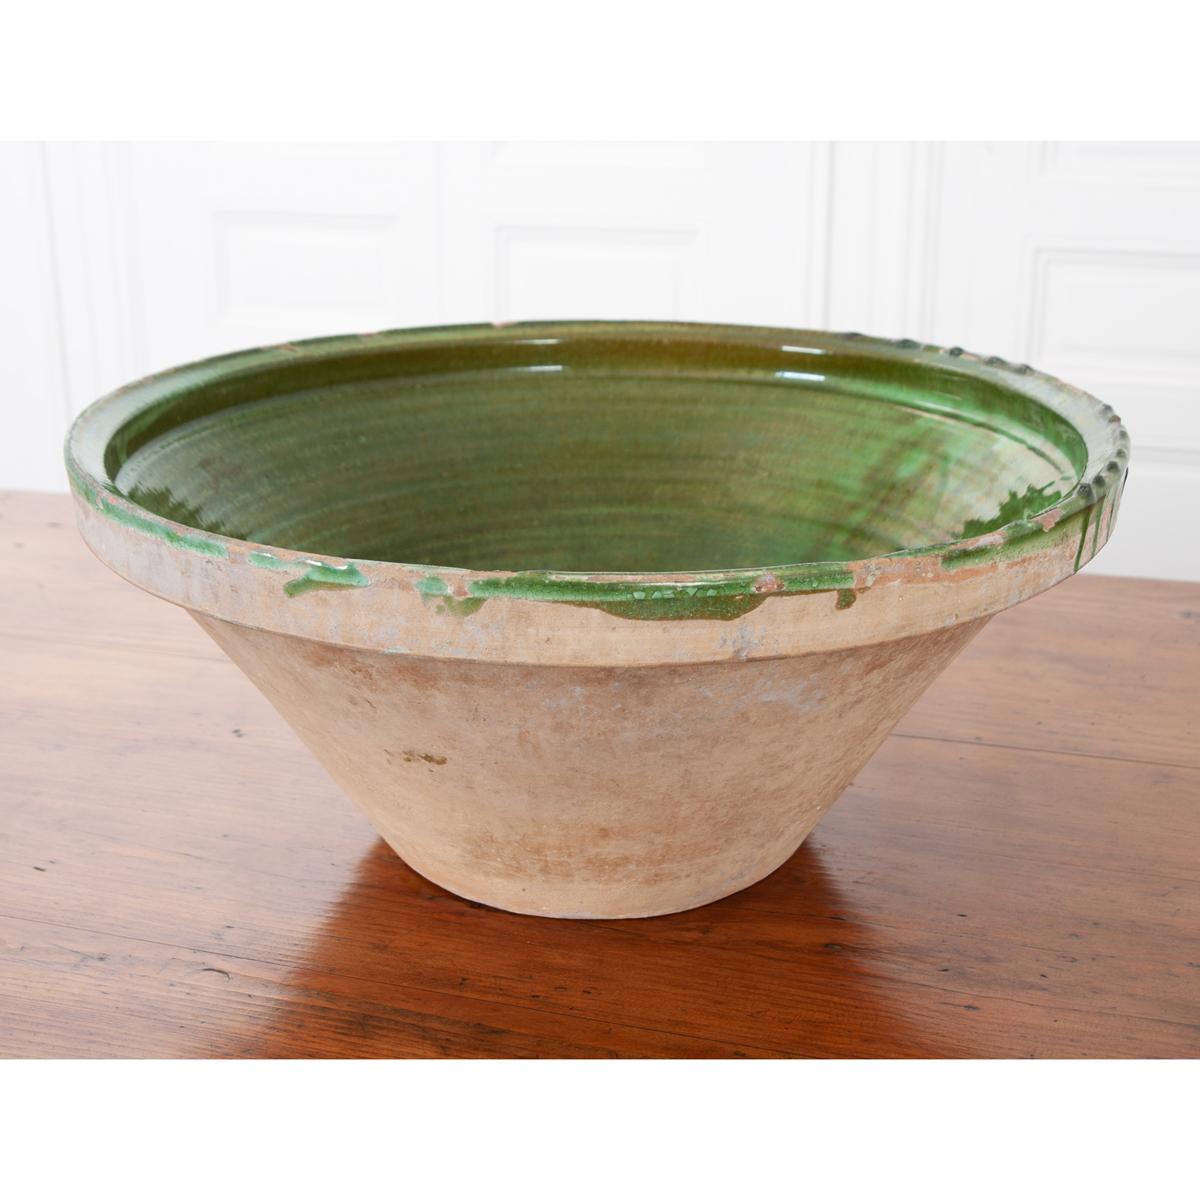 Diese Terrakotta-Rührschüssel ist innen grün glasiert und eignet sich zum Mischen in der Küche. Es ist ein wunderbares Beispiel für antikes Küchengeschirr und kann heute in vielen Bereichen verwendet werden.